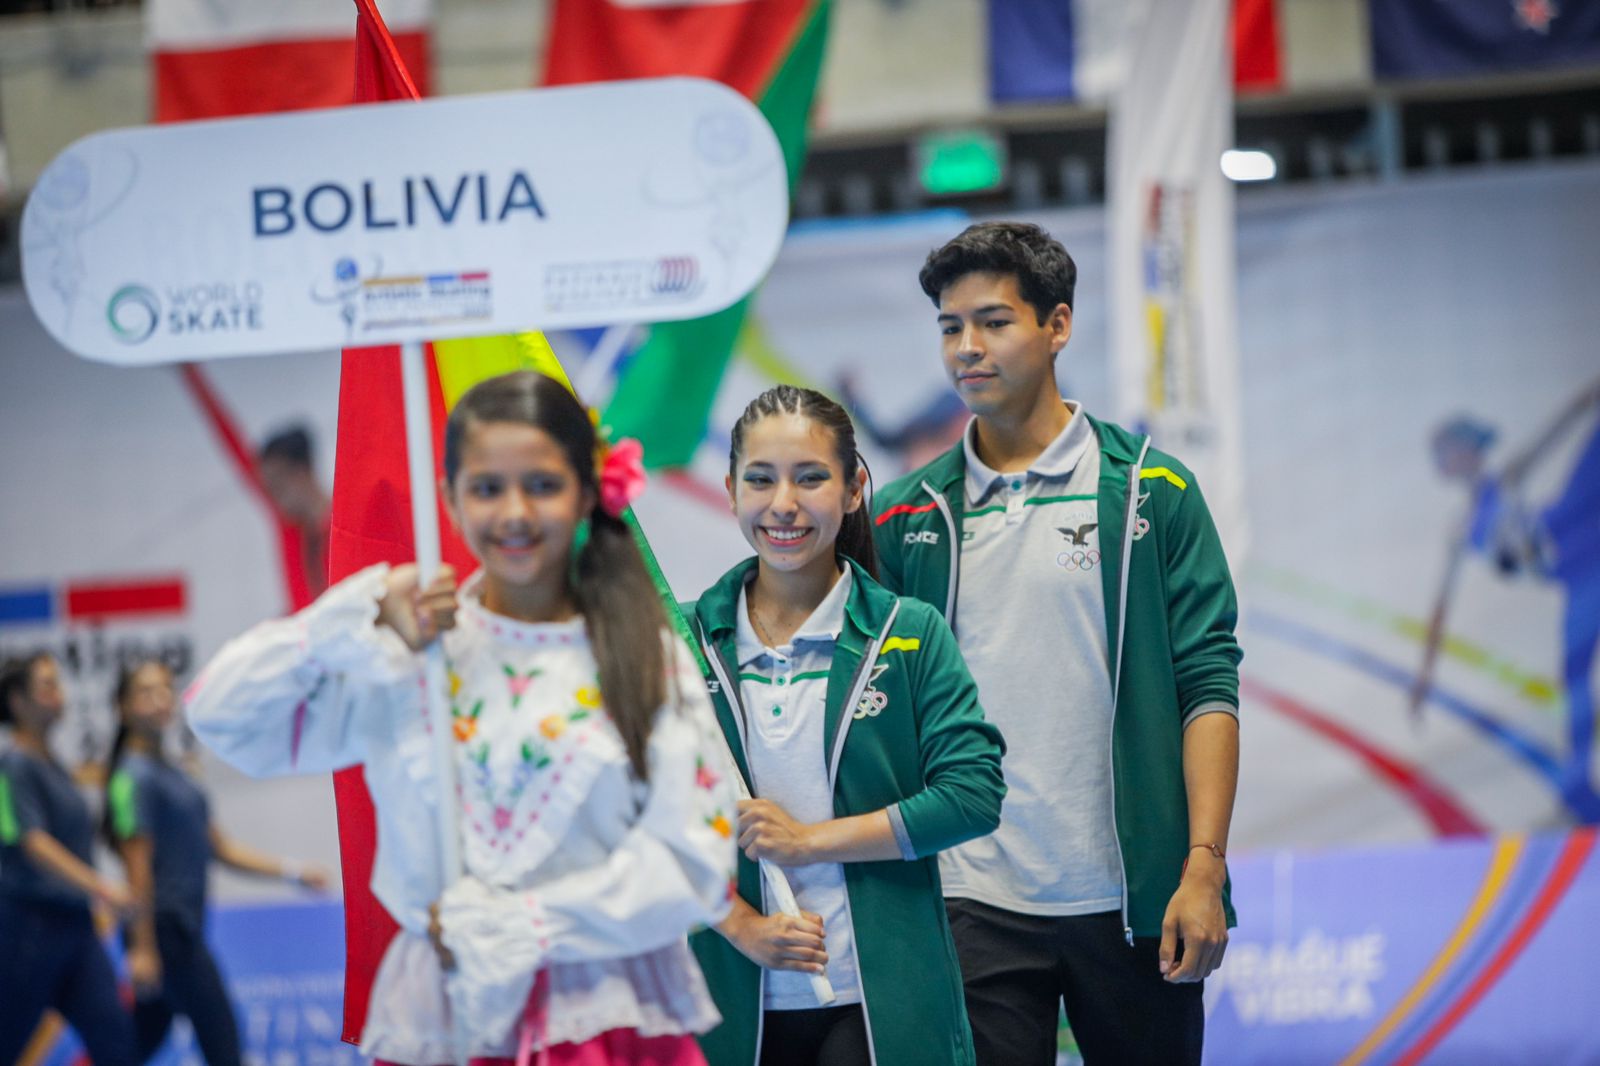 Sin pista en su ciudad, pareja boliviana quiere hacer historia en Mundial de Patinaje